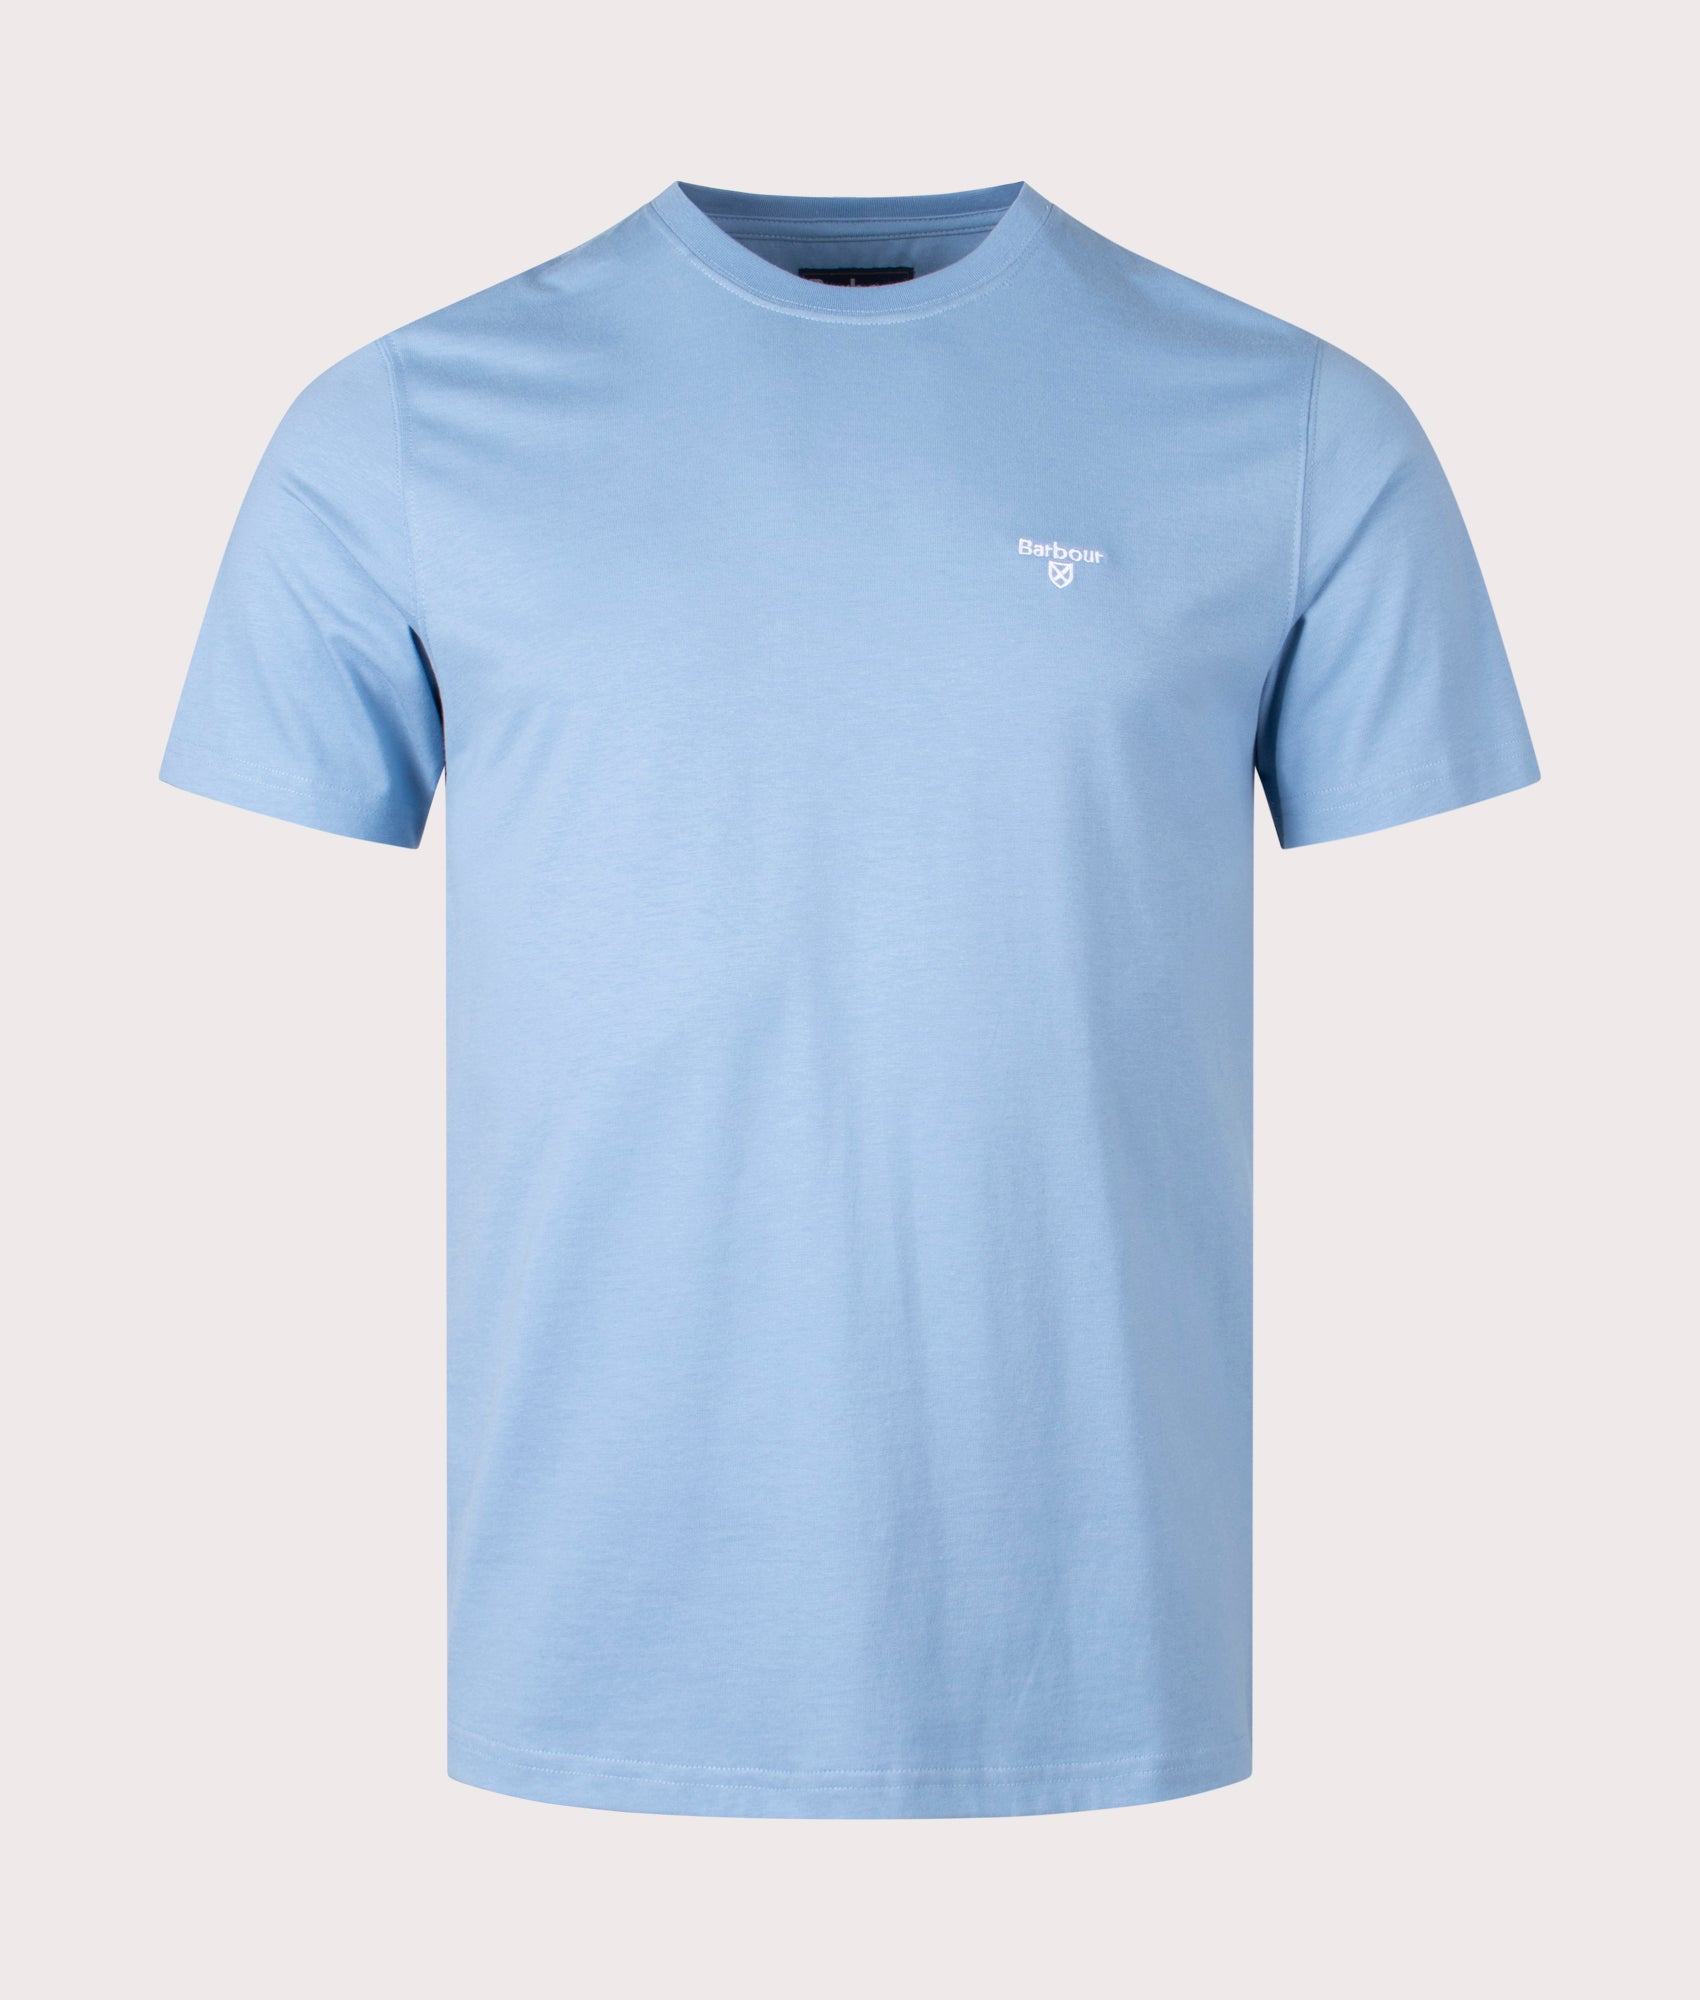 Barbour Lifestyle Mens Essential Sports T-Shirt - Colour: BL33 Blue - Size: Large